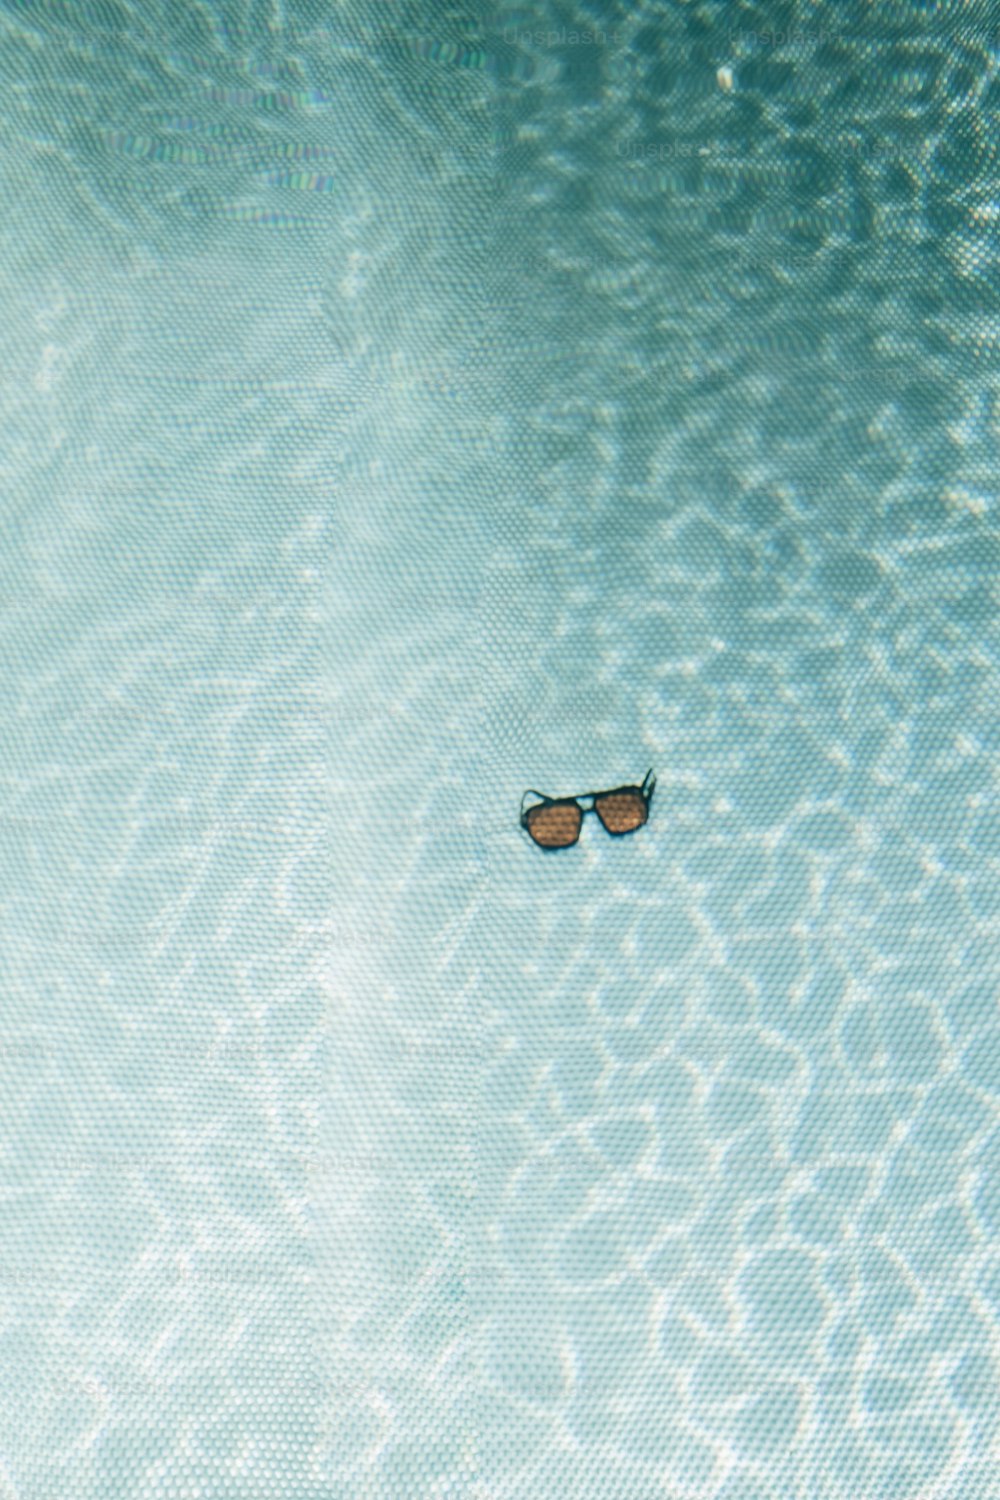 un paio di occhiali da sole che galleggiano in una pozza d'acqua